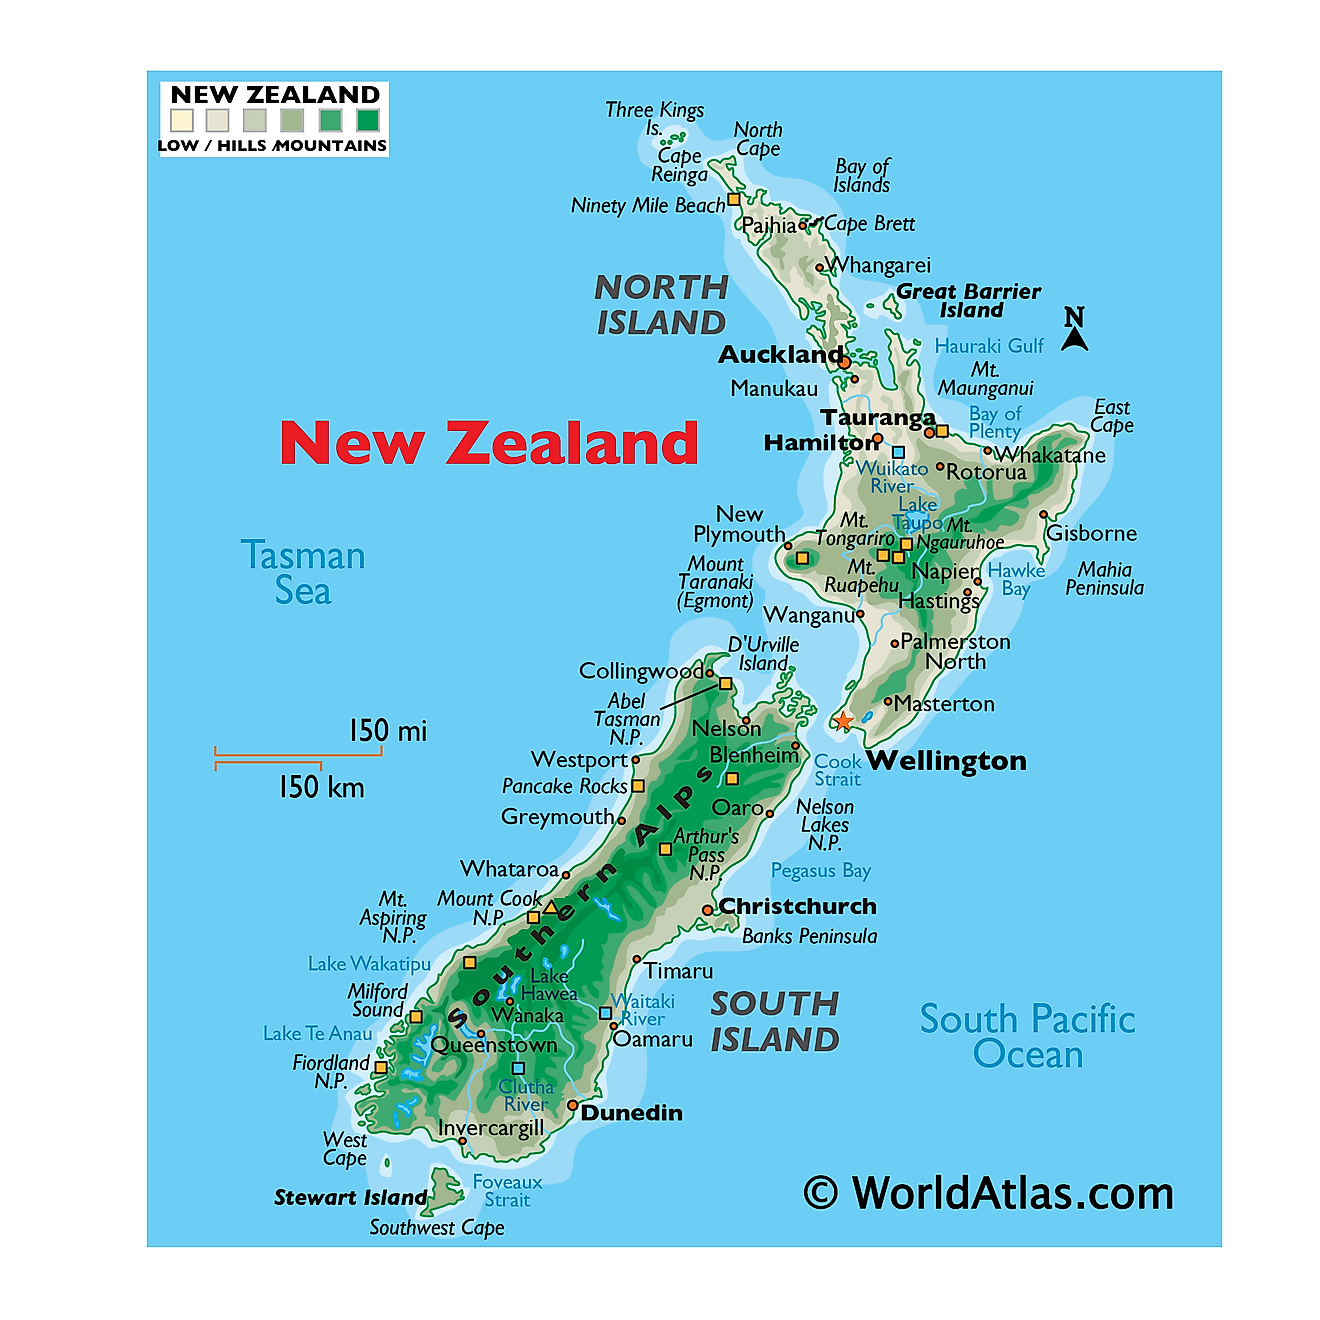 Mapa físico de Nueva Zelanda que muestra relieve, montañas, islas principales, cabos, parques nacionales, ríos, ciudades importantes y más.